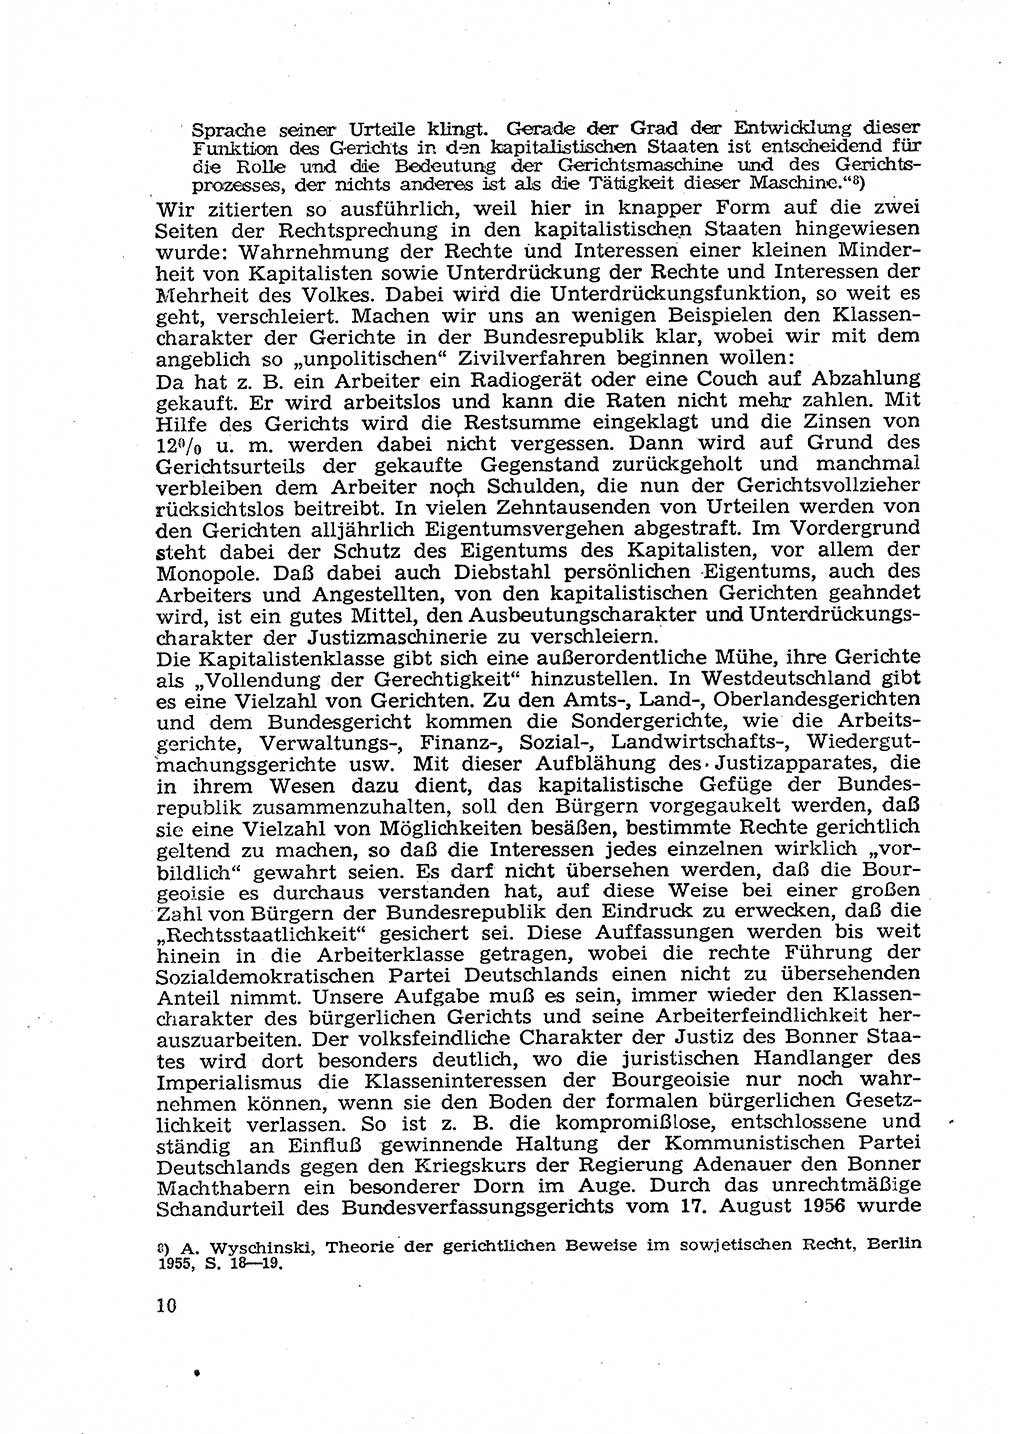 Gericht und Rechtsprechung in der Deutschen Demokratischen Republik (DDR) 1956, Seite 10 (Ger. Rechtspr. DDR 1956, S. 10)